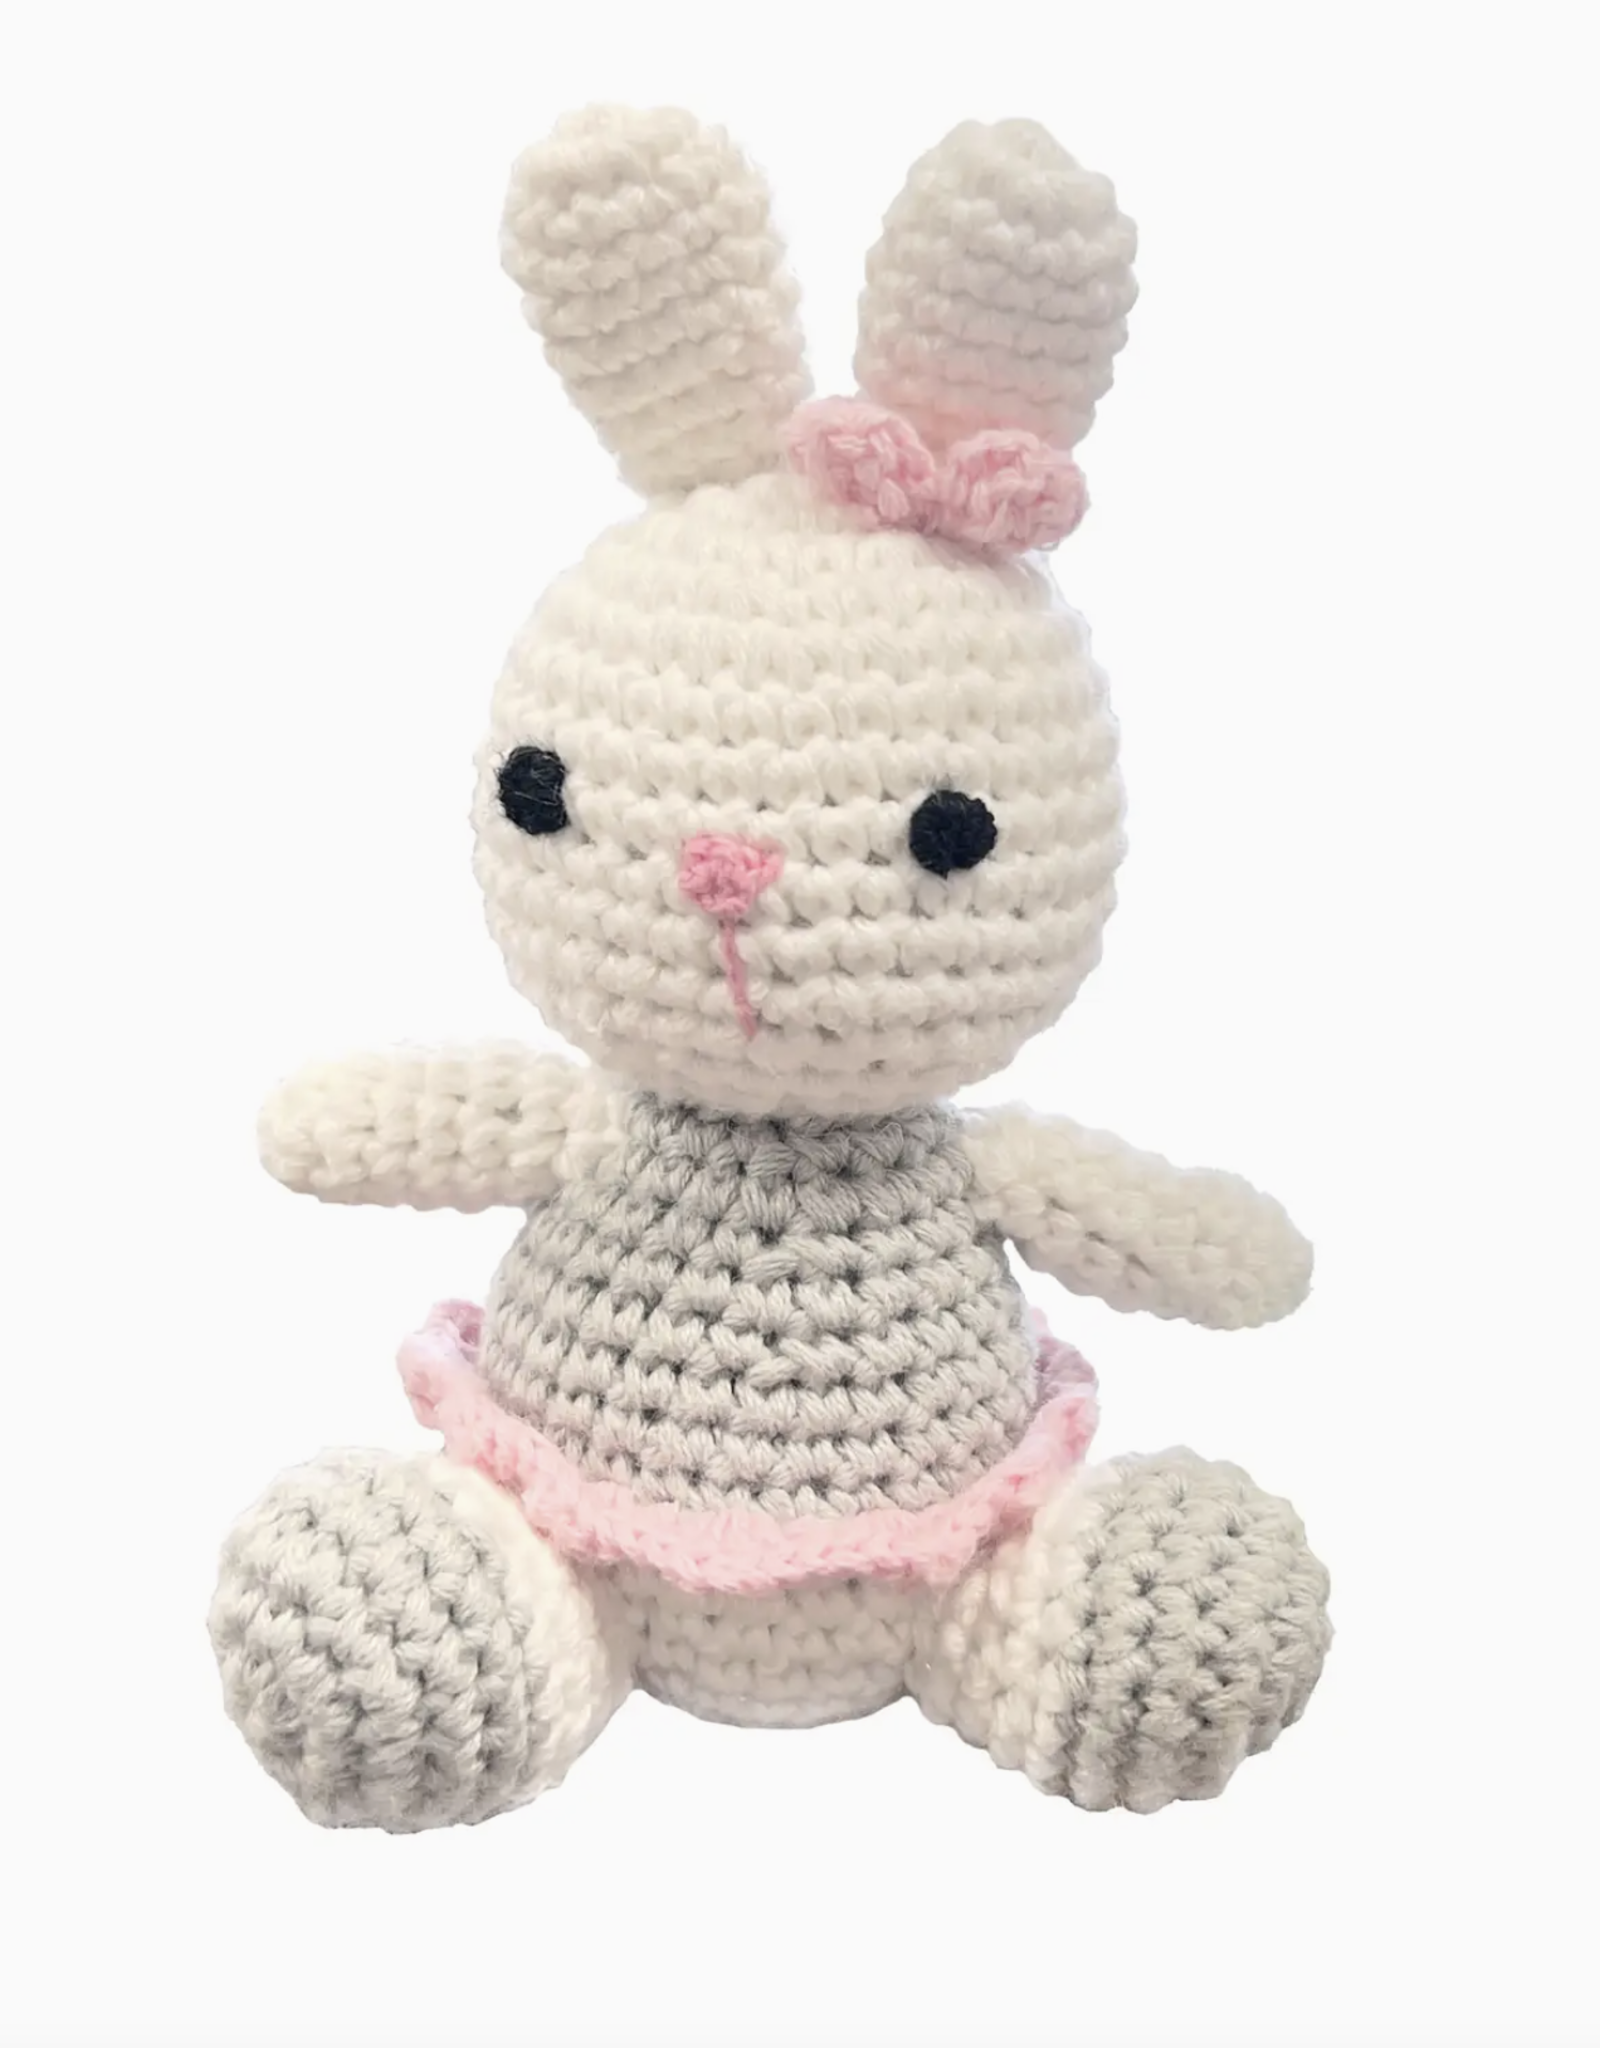 Zubels Ballerina Bunny Crochet Rattle